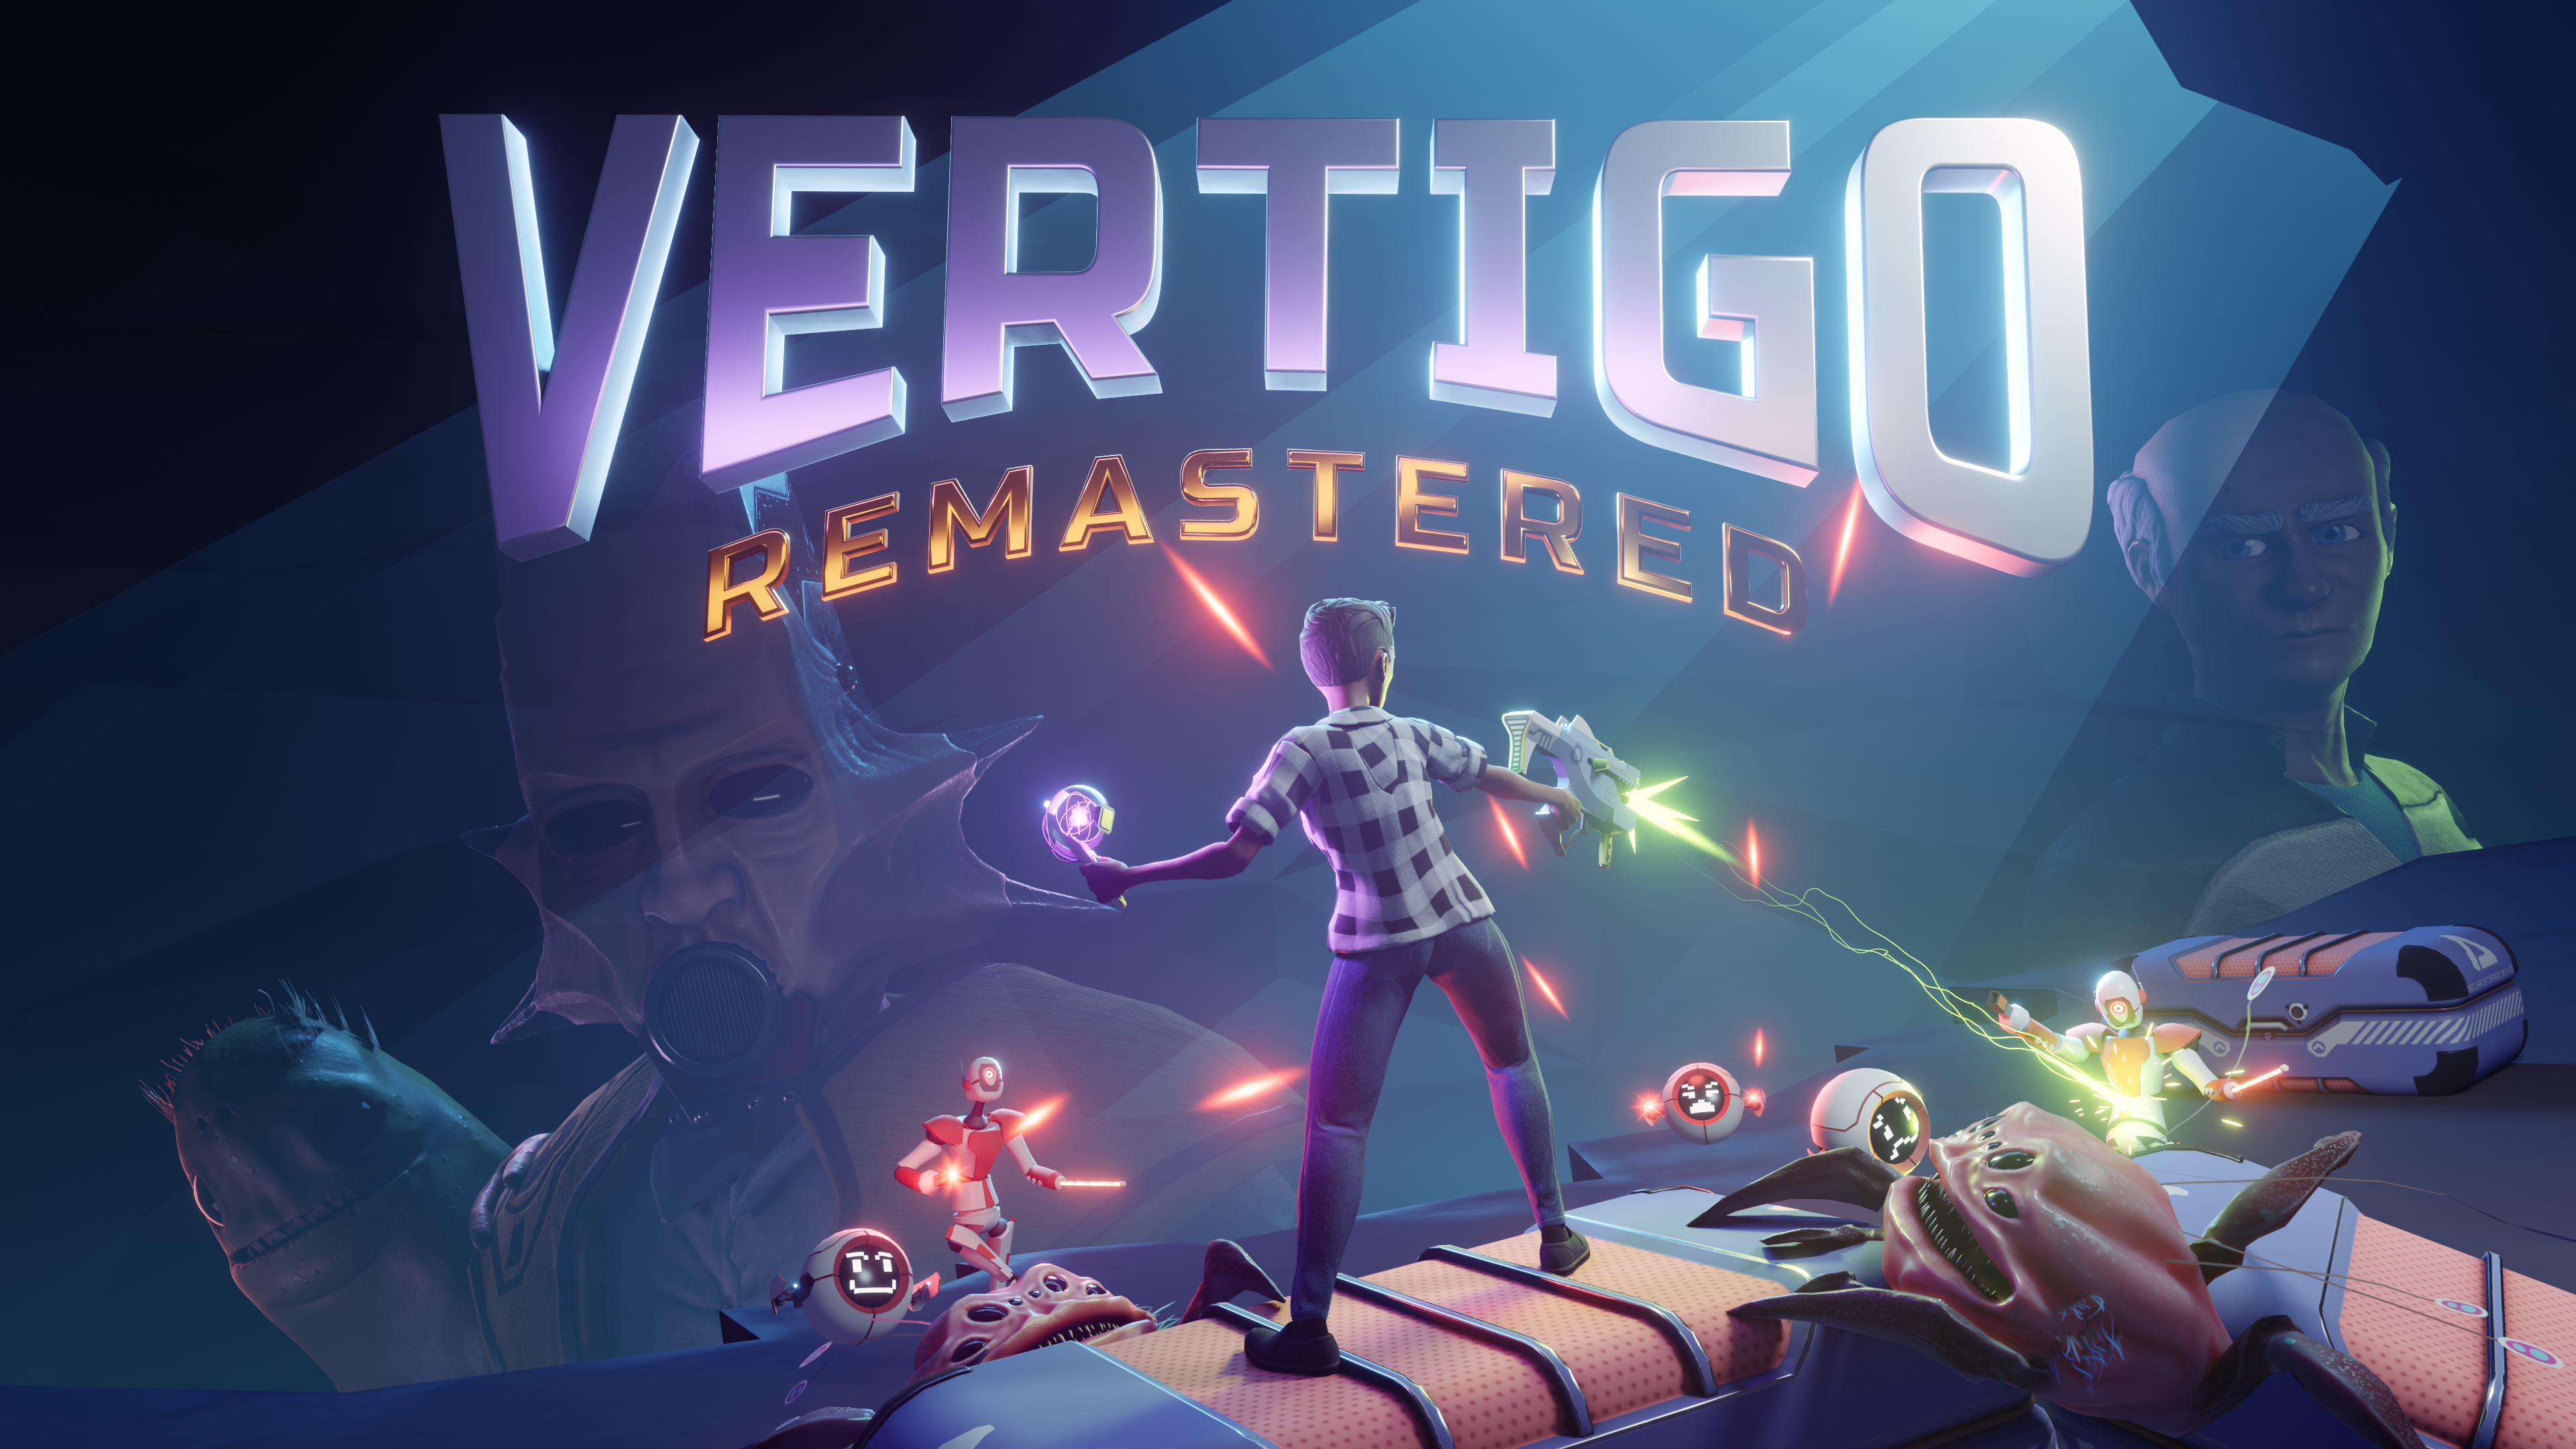 Vertigo Remastered - THE VR